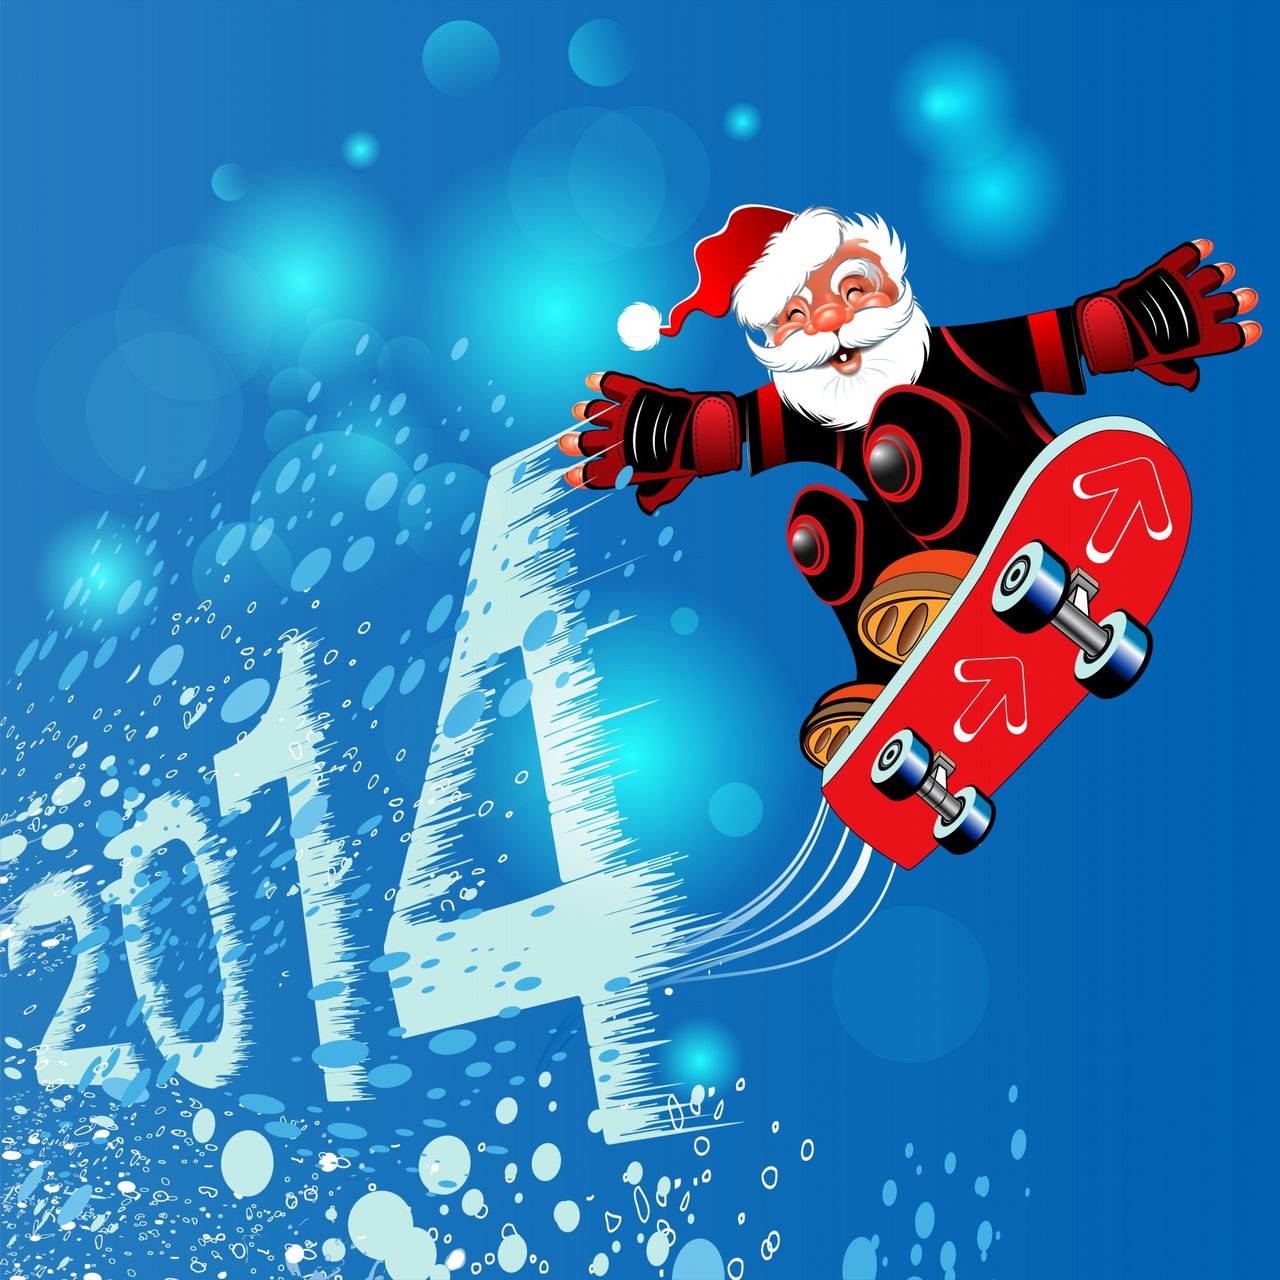 صور بطاقات تهنئة للكريسماس 2014 جديدة , احلى خلفيات تهنئة لرأس السنة 2014 Merry Christmas Cards